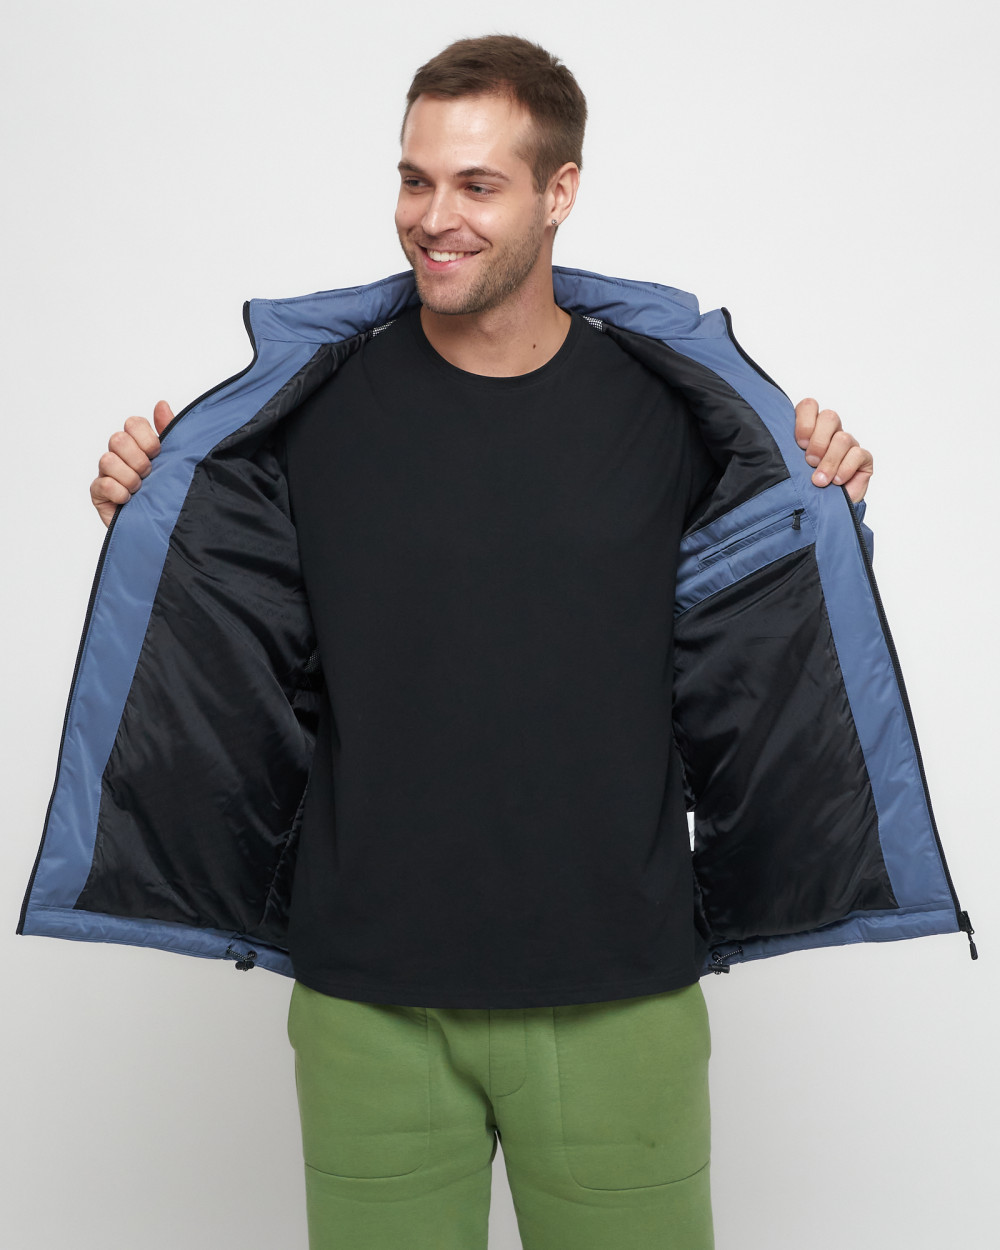 Купить куртку мужскую спортивную весеннюю оптом от производителя недорого в Москве 8816S 1